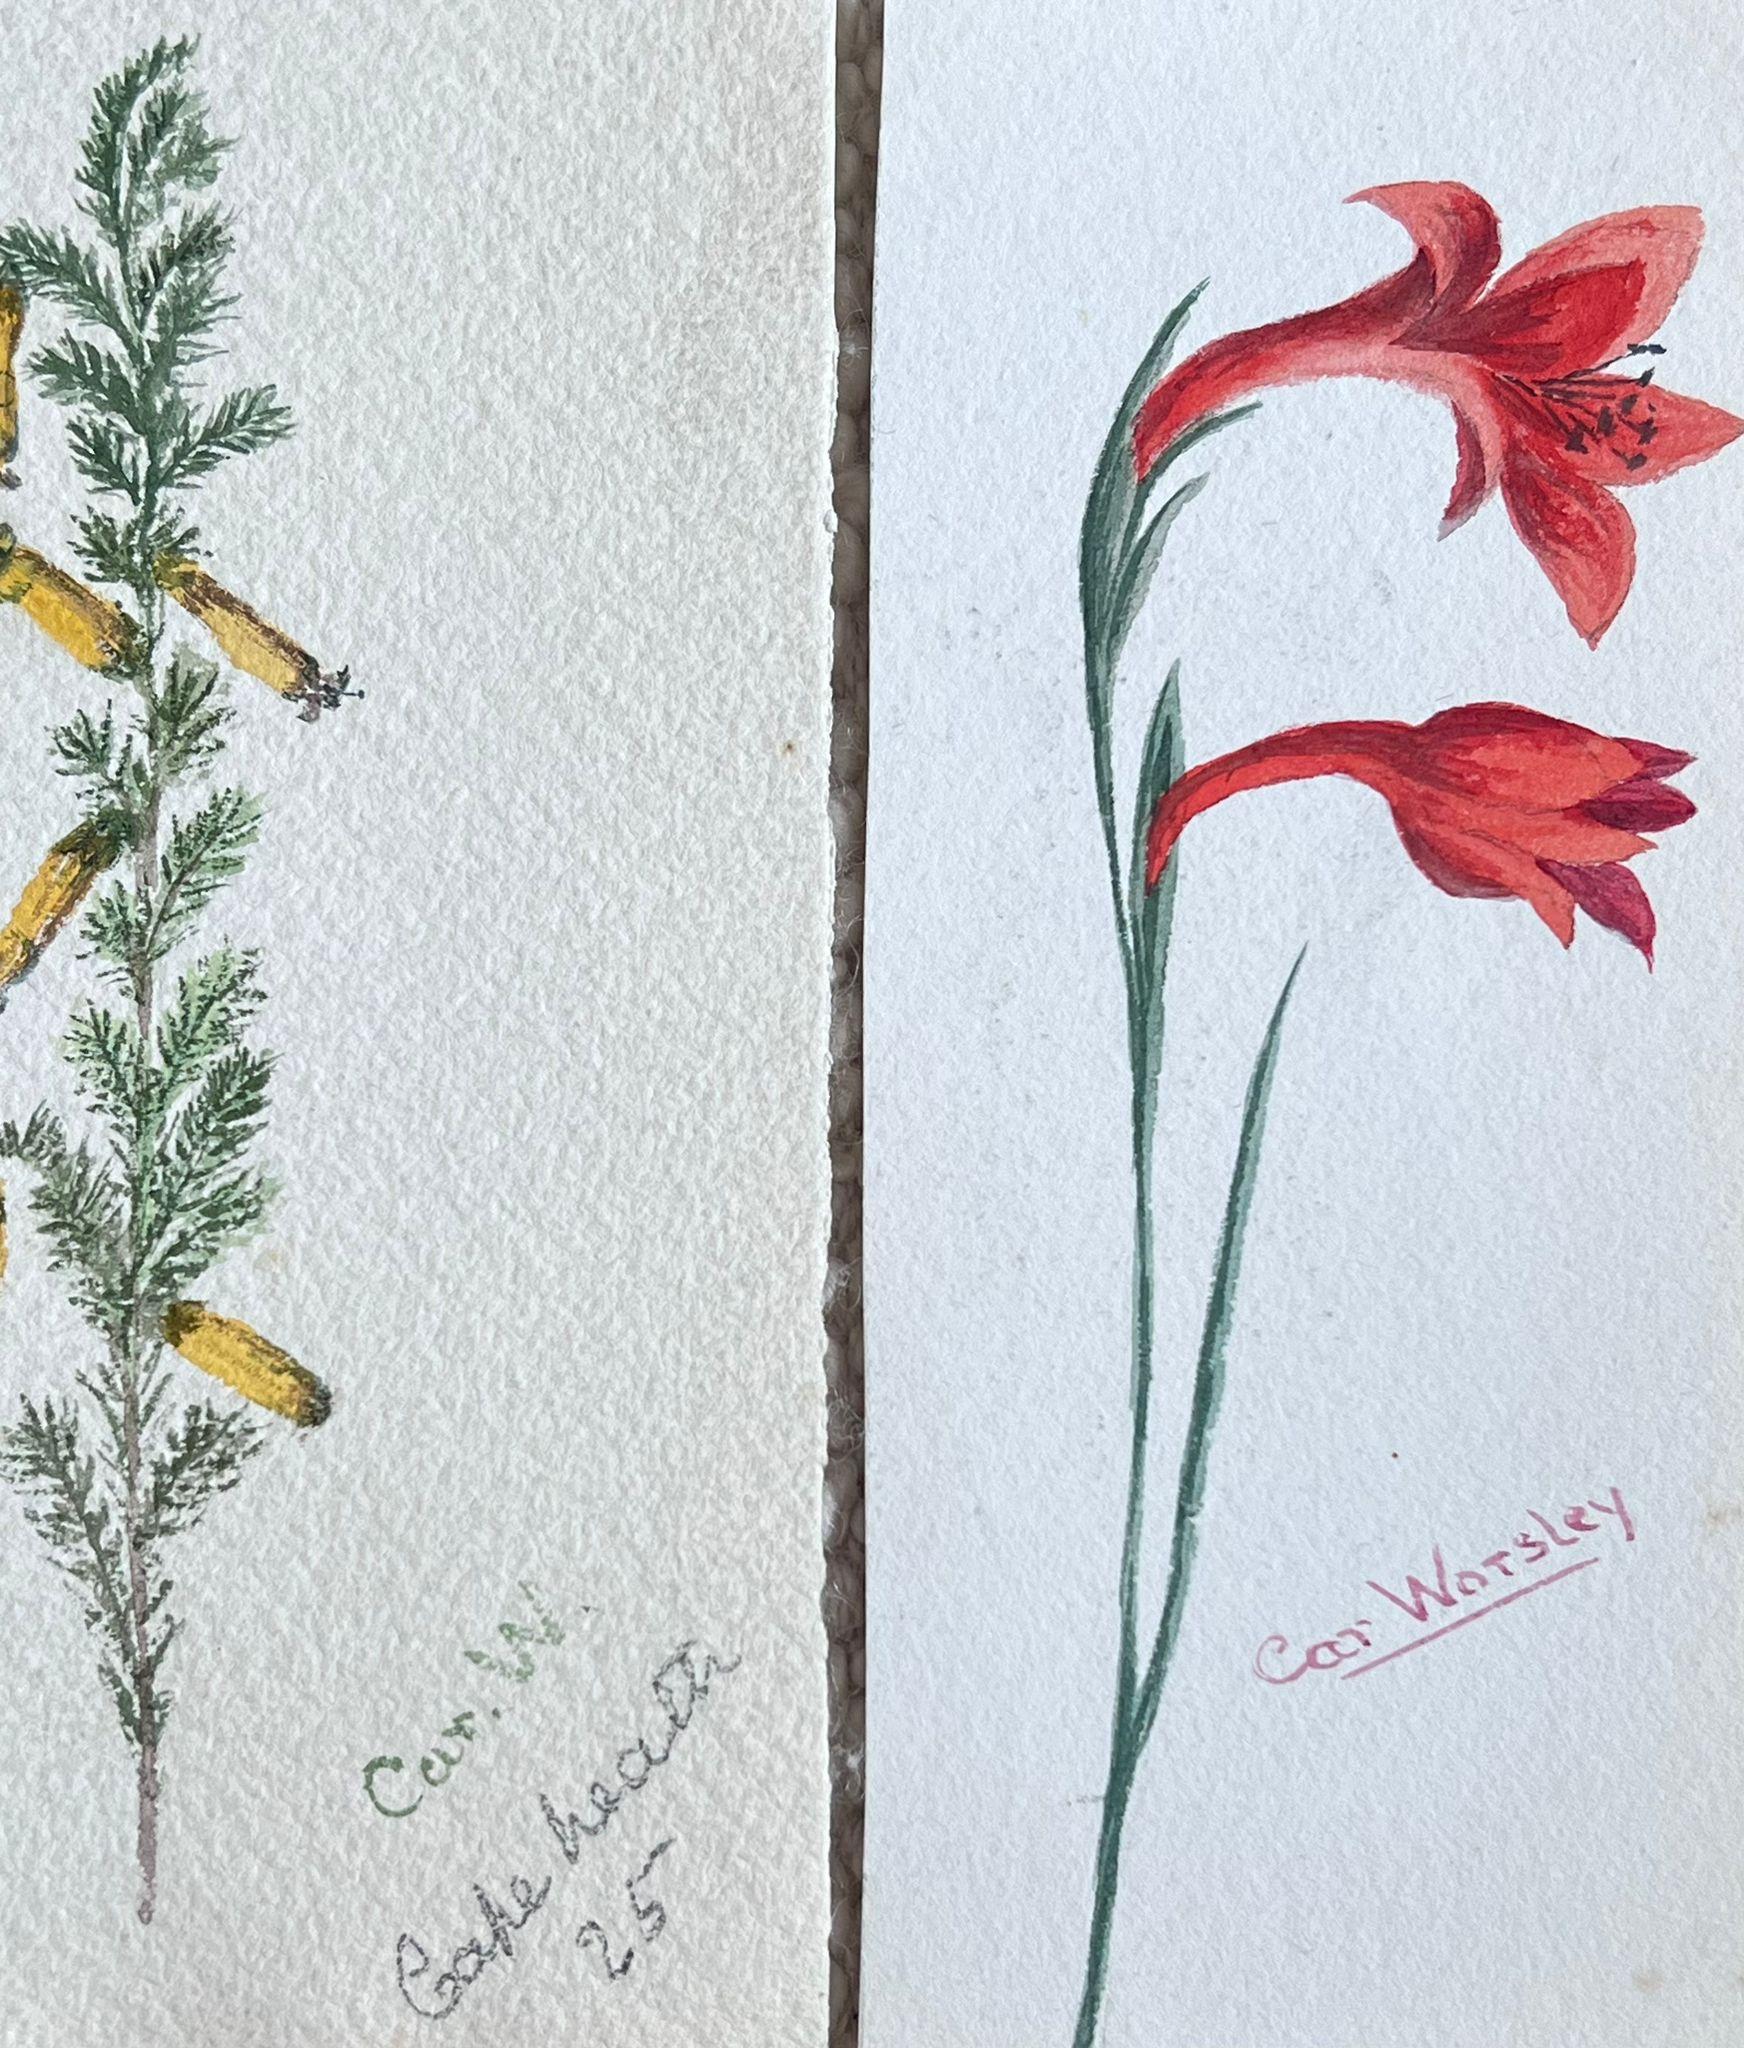 Ensemble de deux peintures botaniques britanniques anciennes représentant des fleurs jaunes et rouges - Art de Caroline Worsley